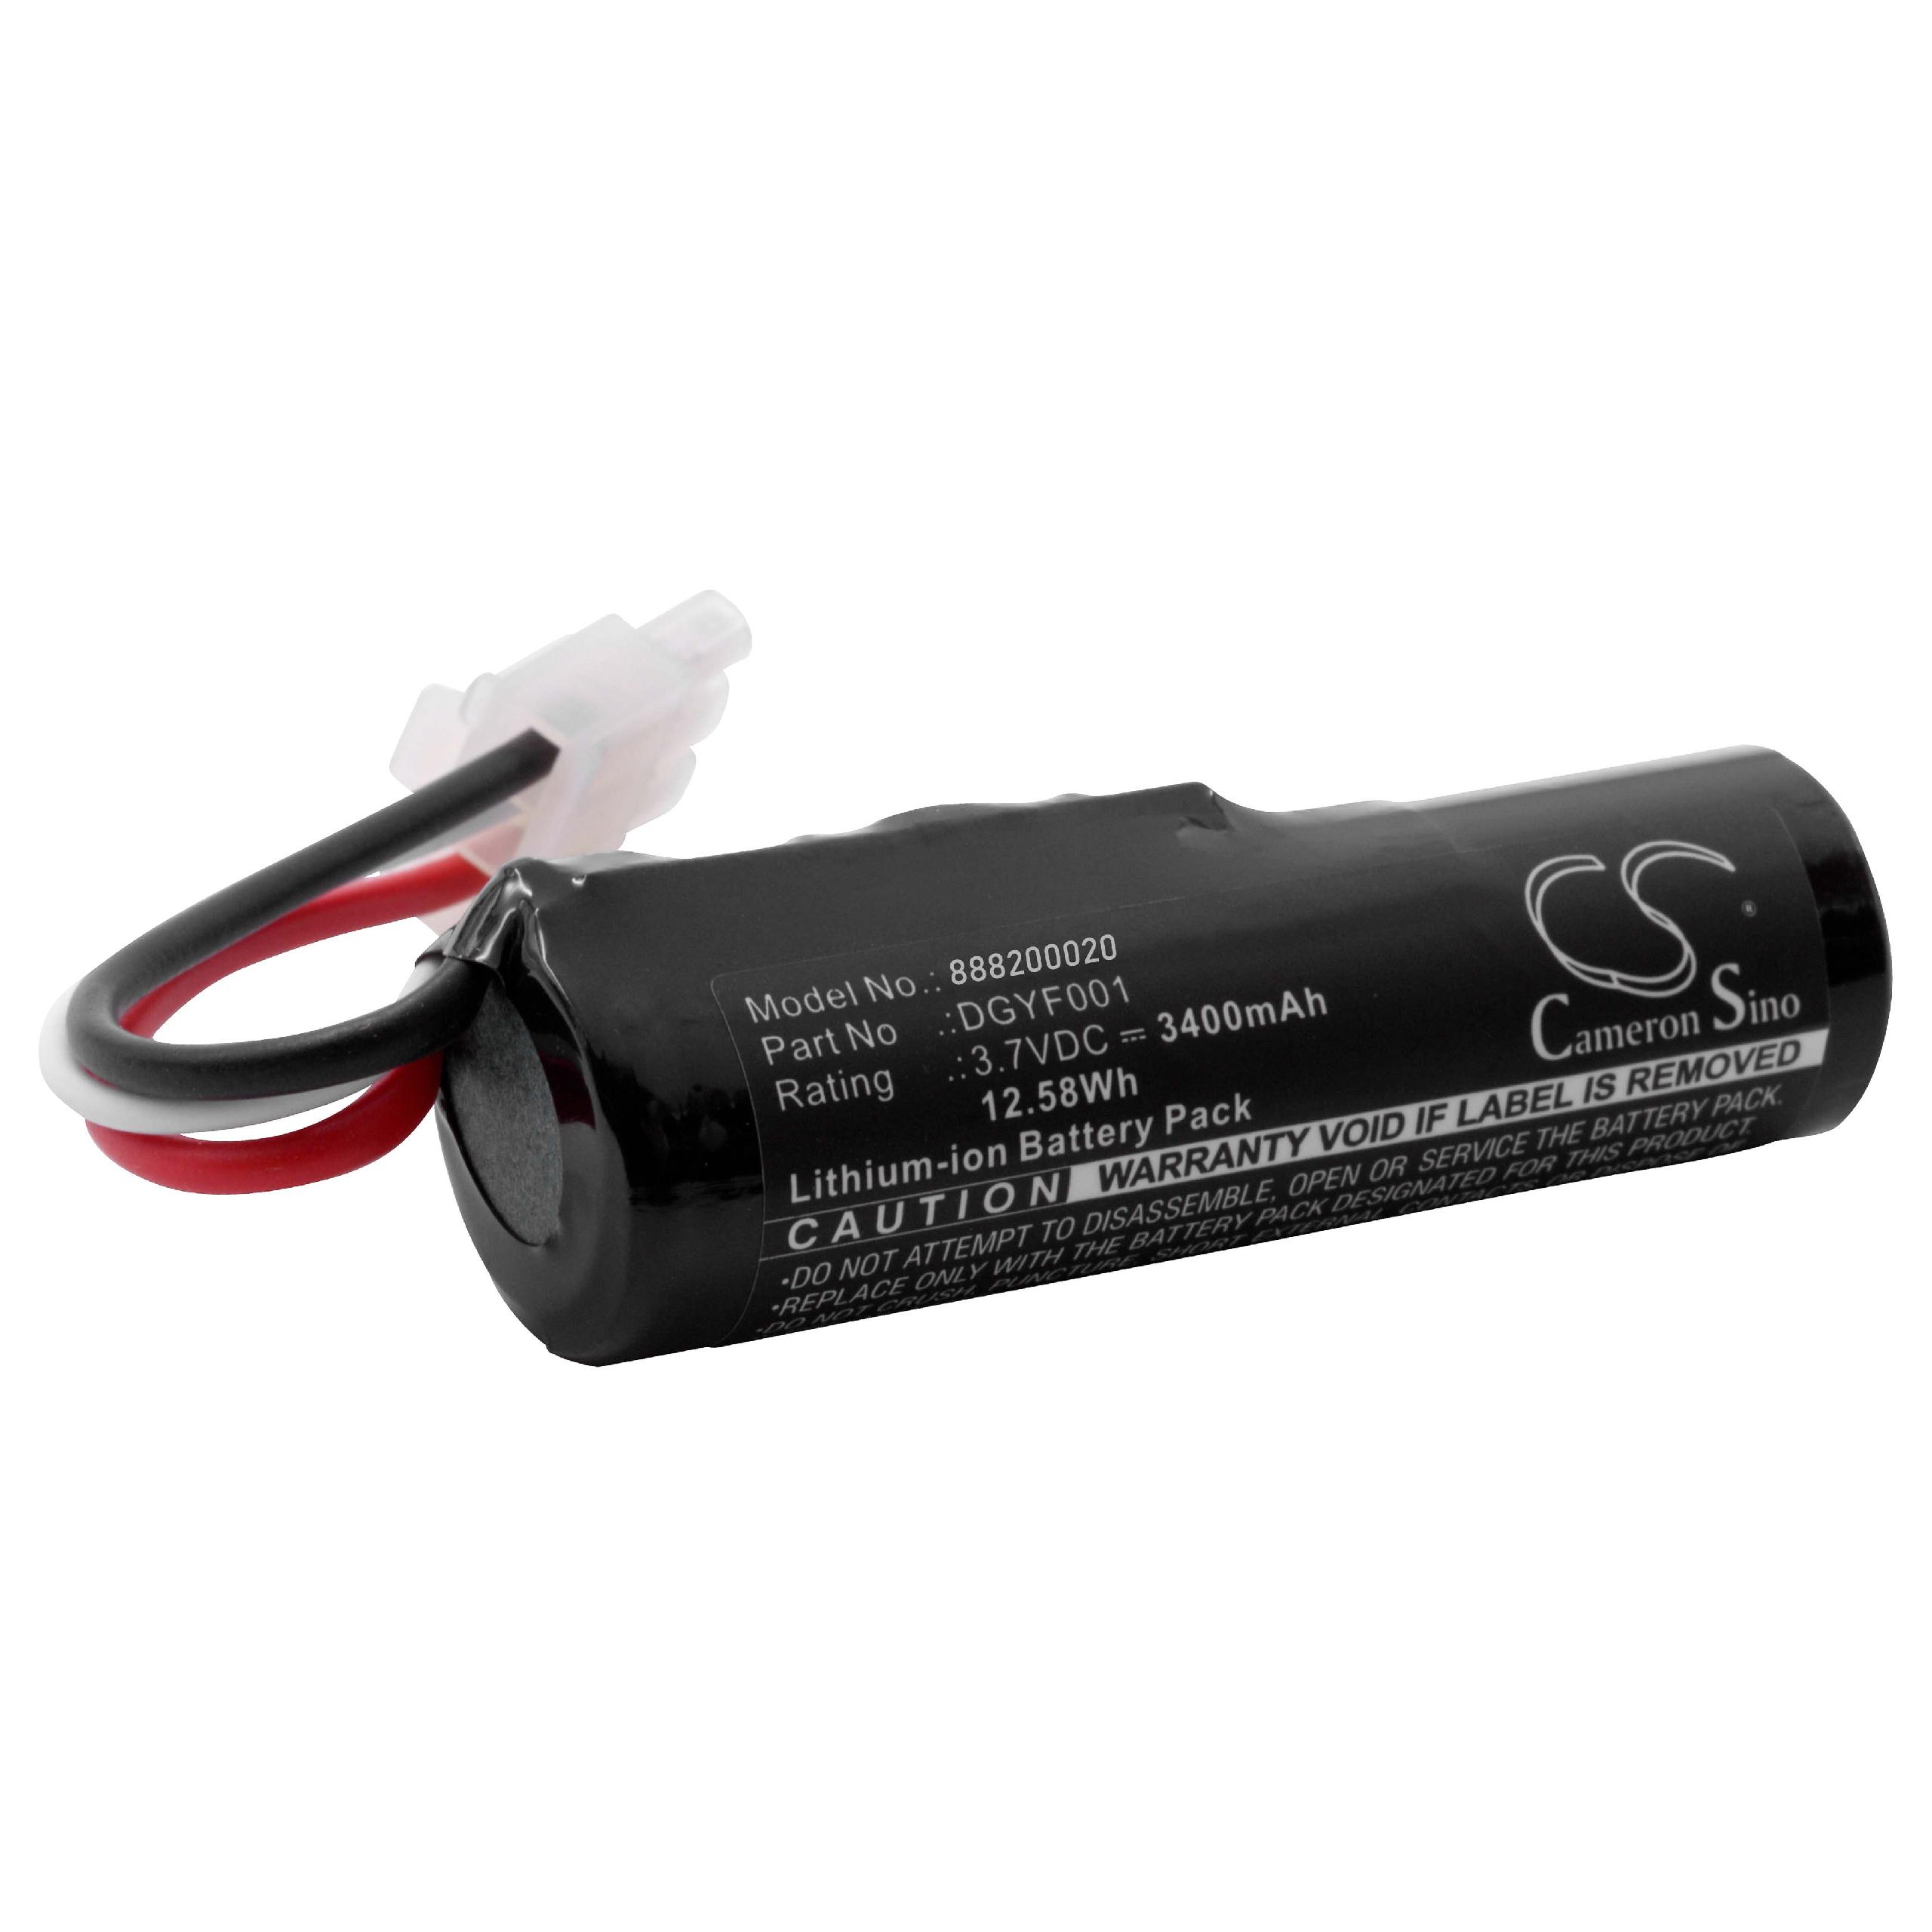 Batterie remplace Logitech GPRLO18SY002, DGYF001, 533-000096 pour enceinte Logitech - 3400mAh 3,7V Li-ion